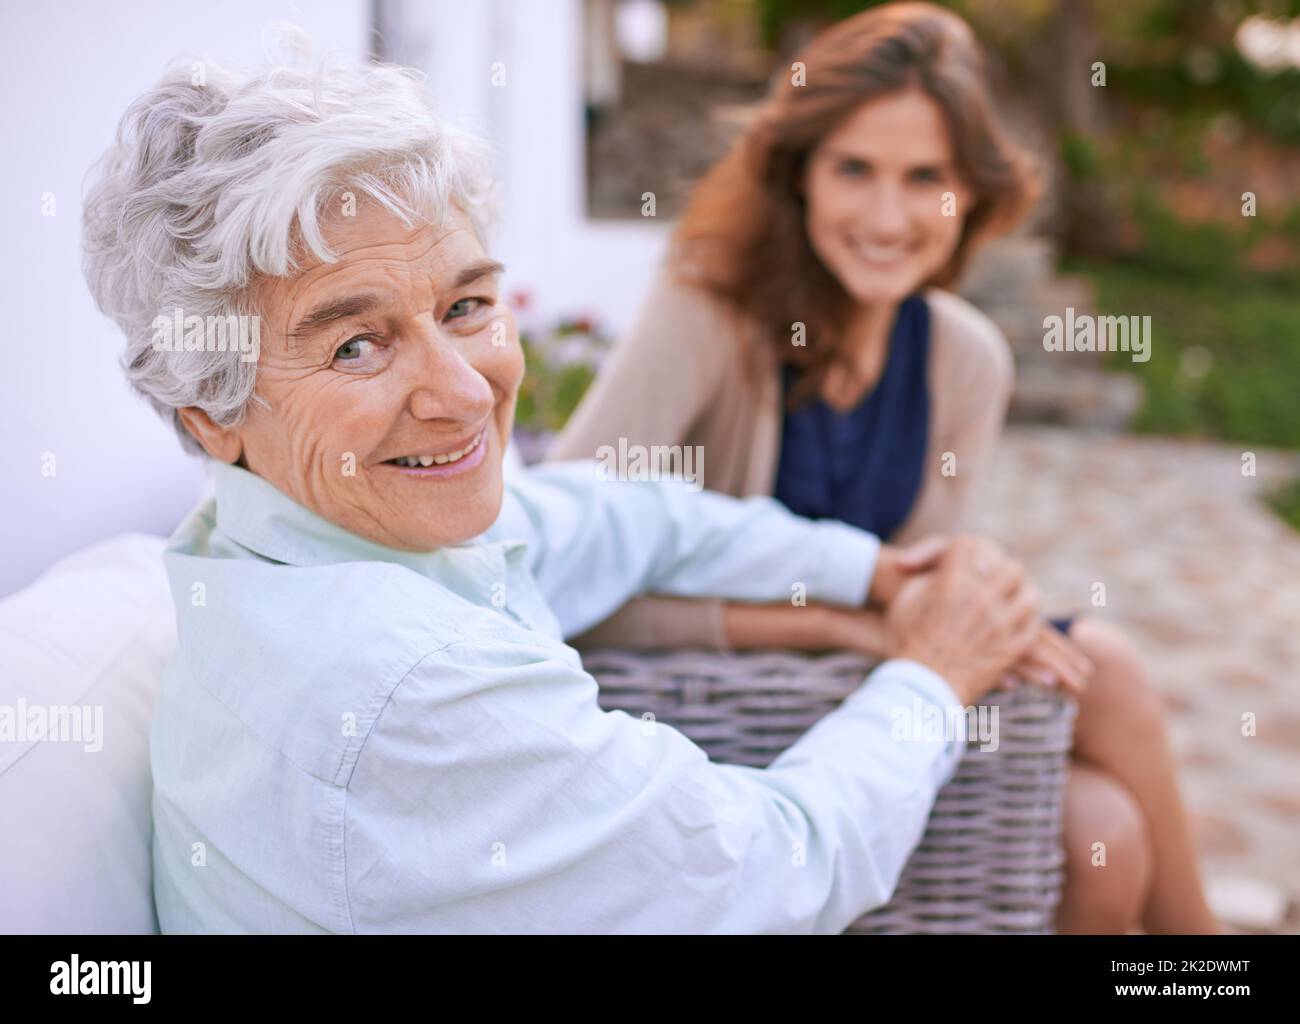 Theyre ancora così vicino.... Scatto corto di una giovane donna e di sua madre anziana. Foto Stock